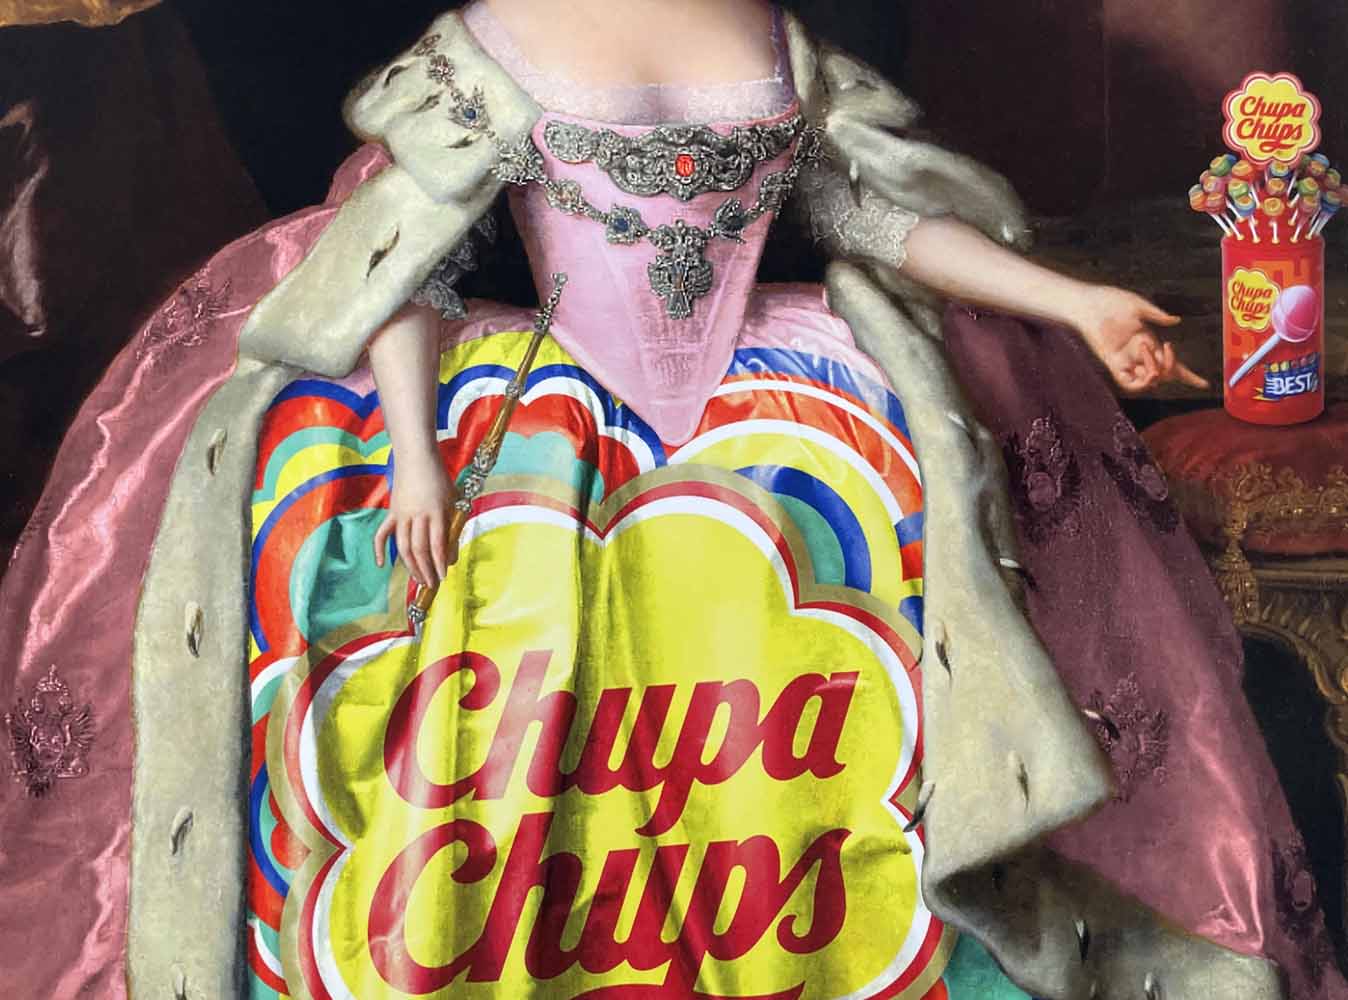 Chupa Chups Enlarged